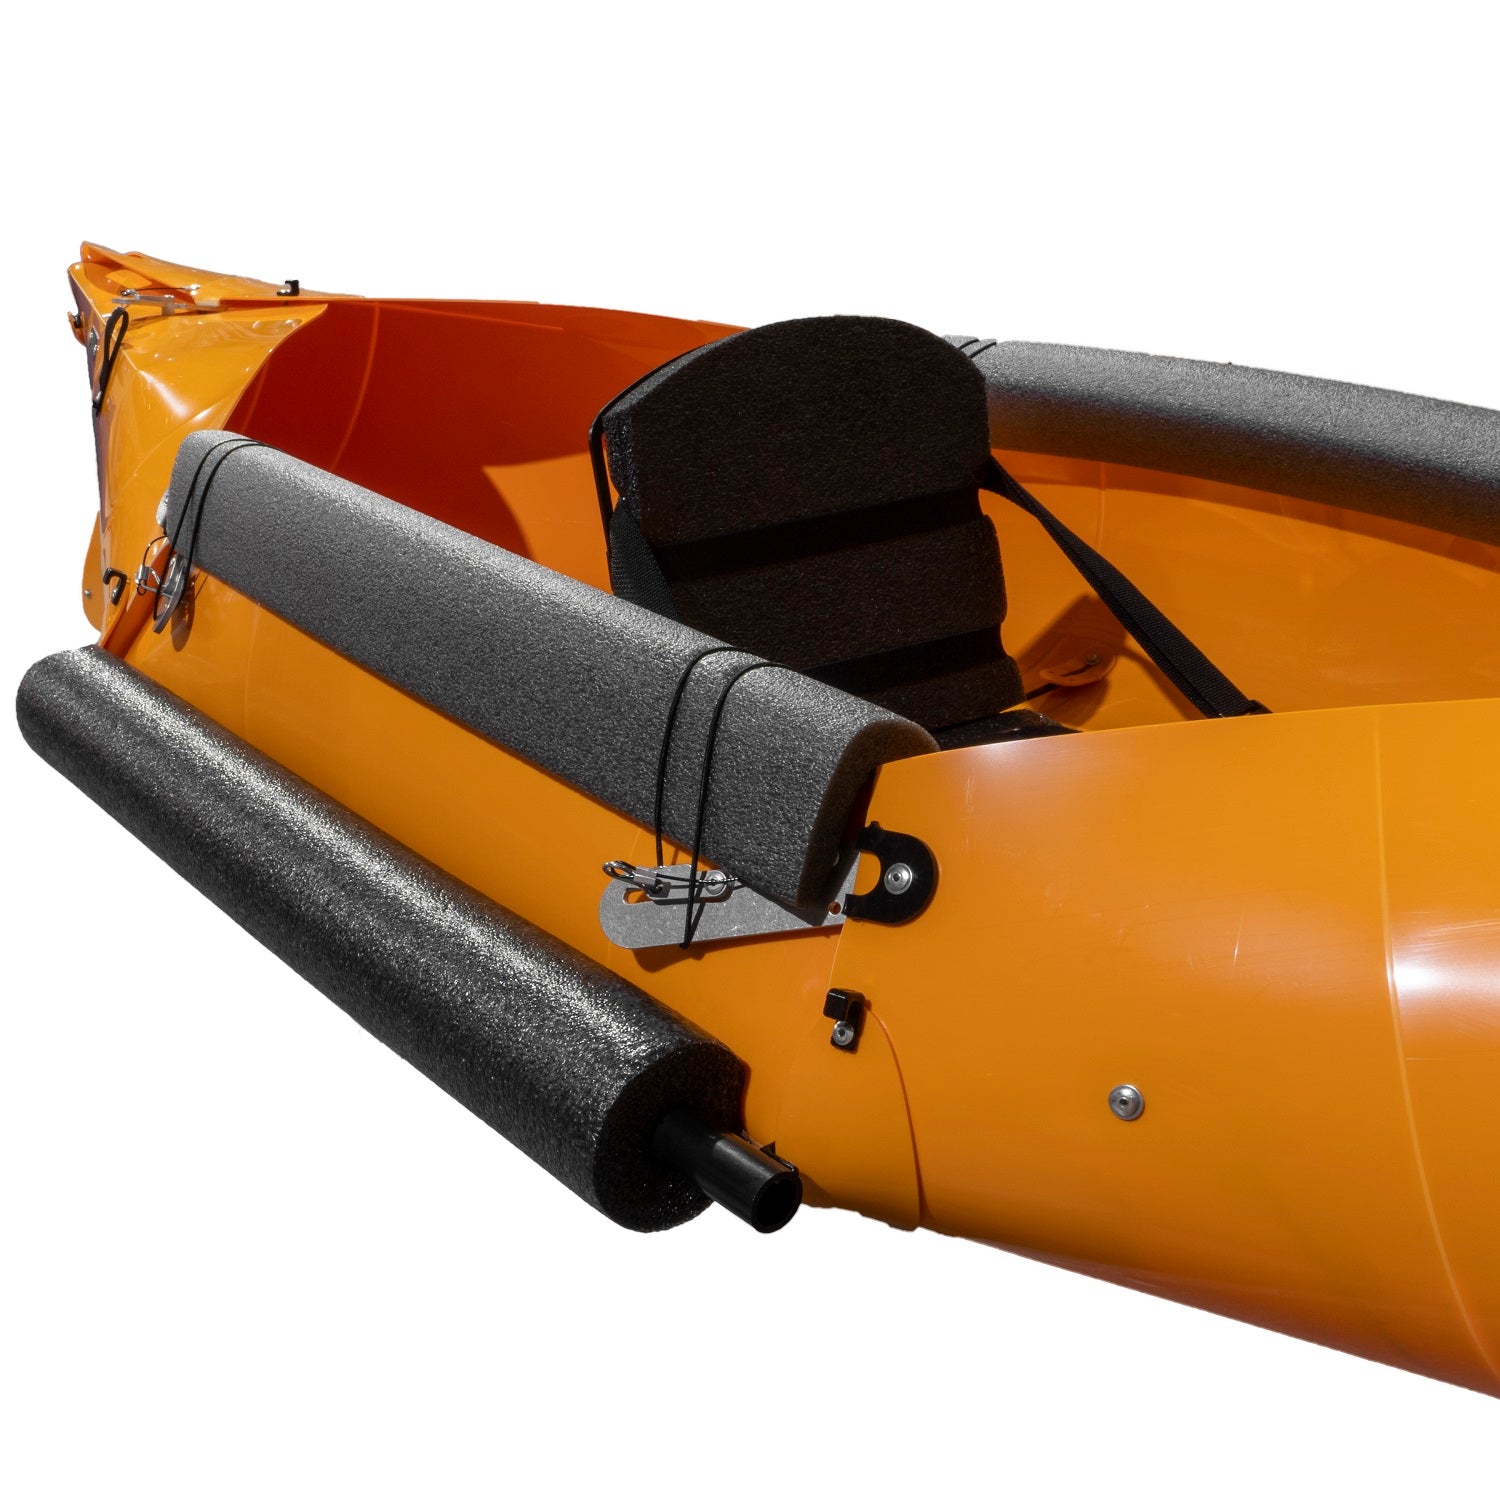 TUCKTEC Kayak-Fishing Bundle  Folding Kayaks – Tucktec Folding Kayaks